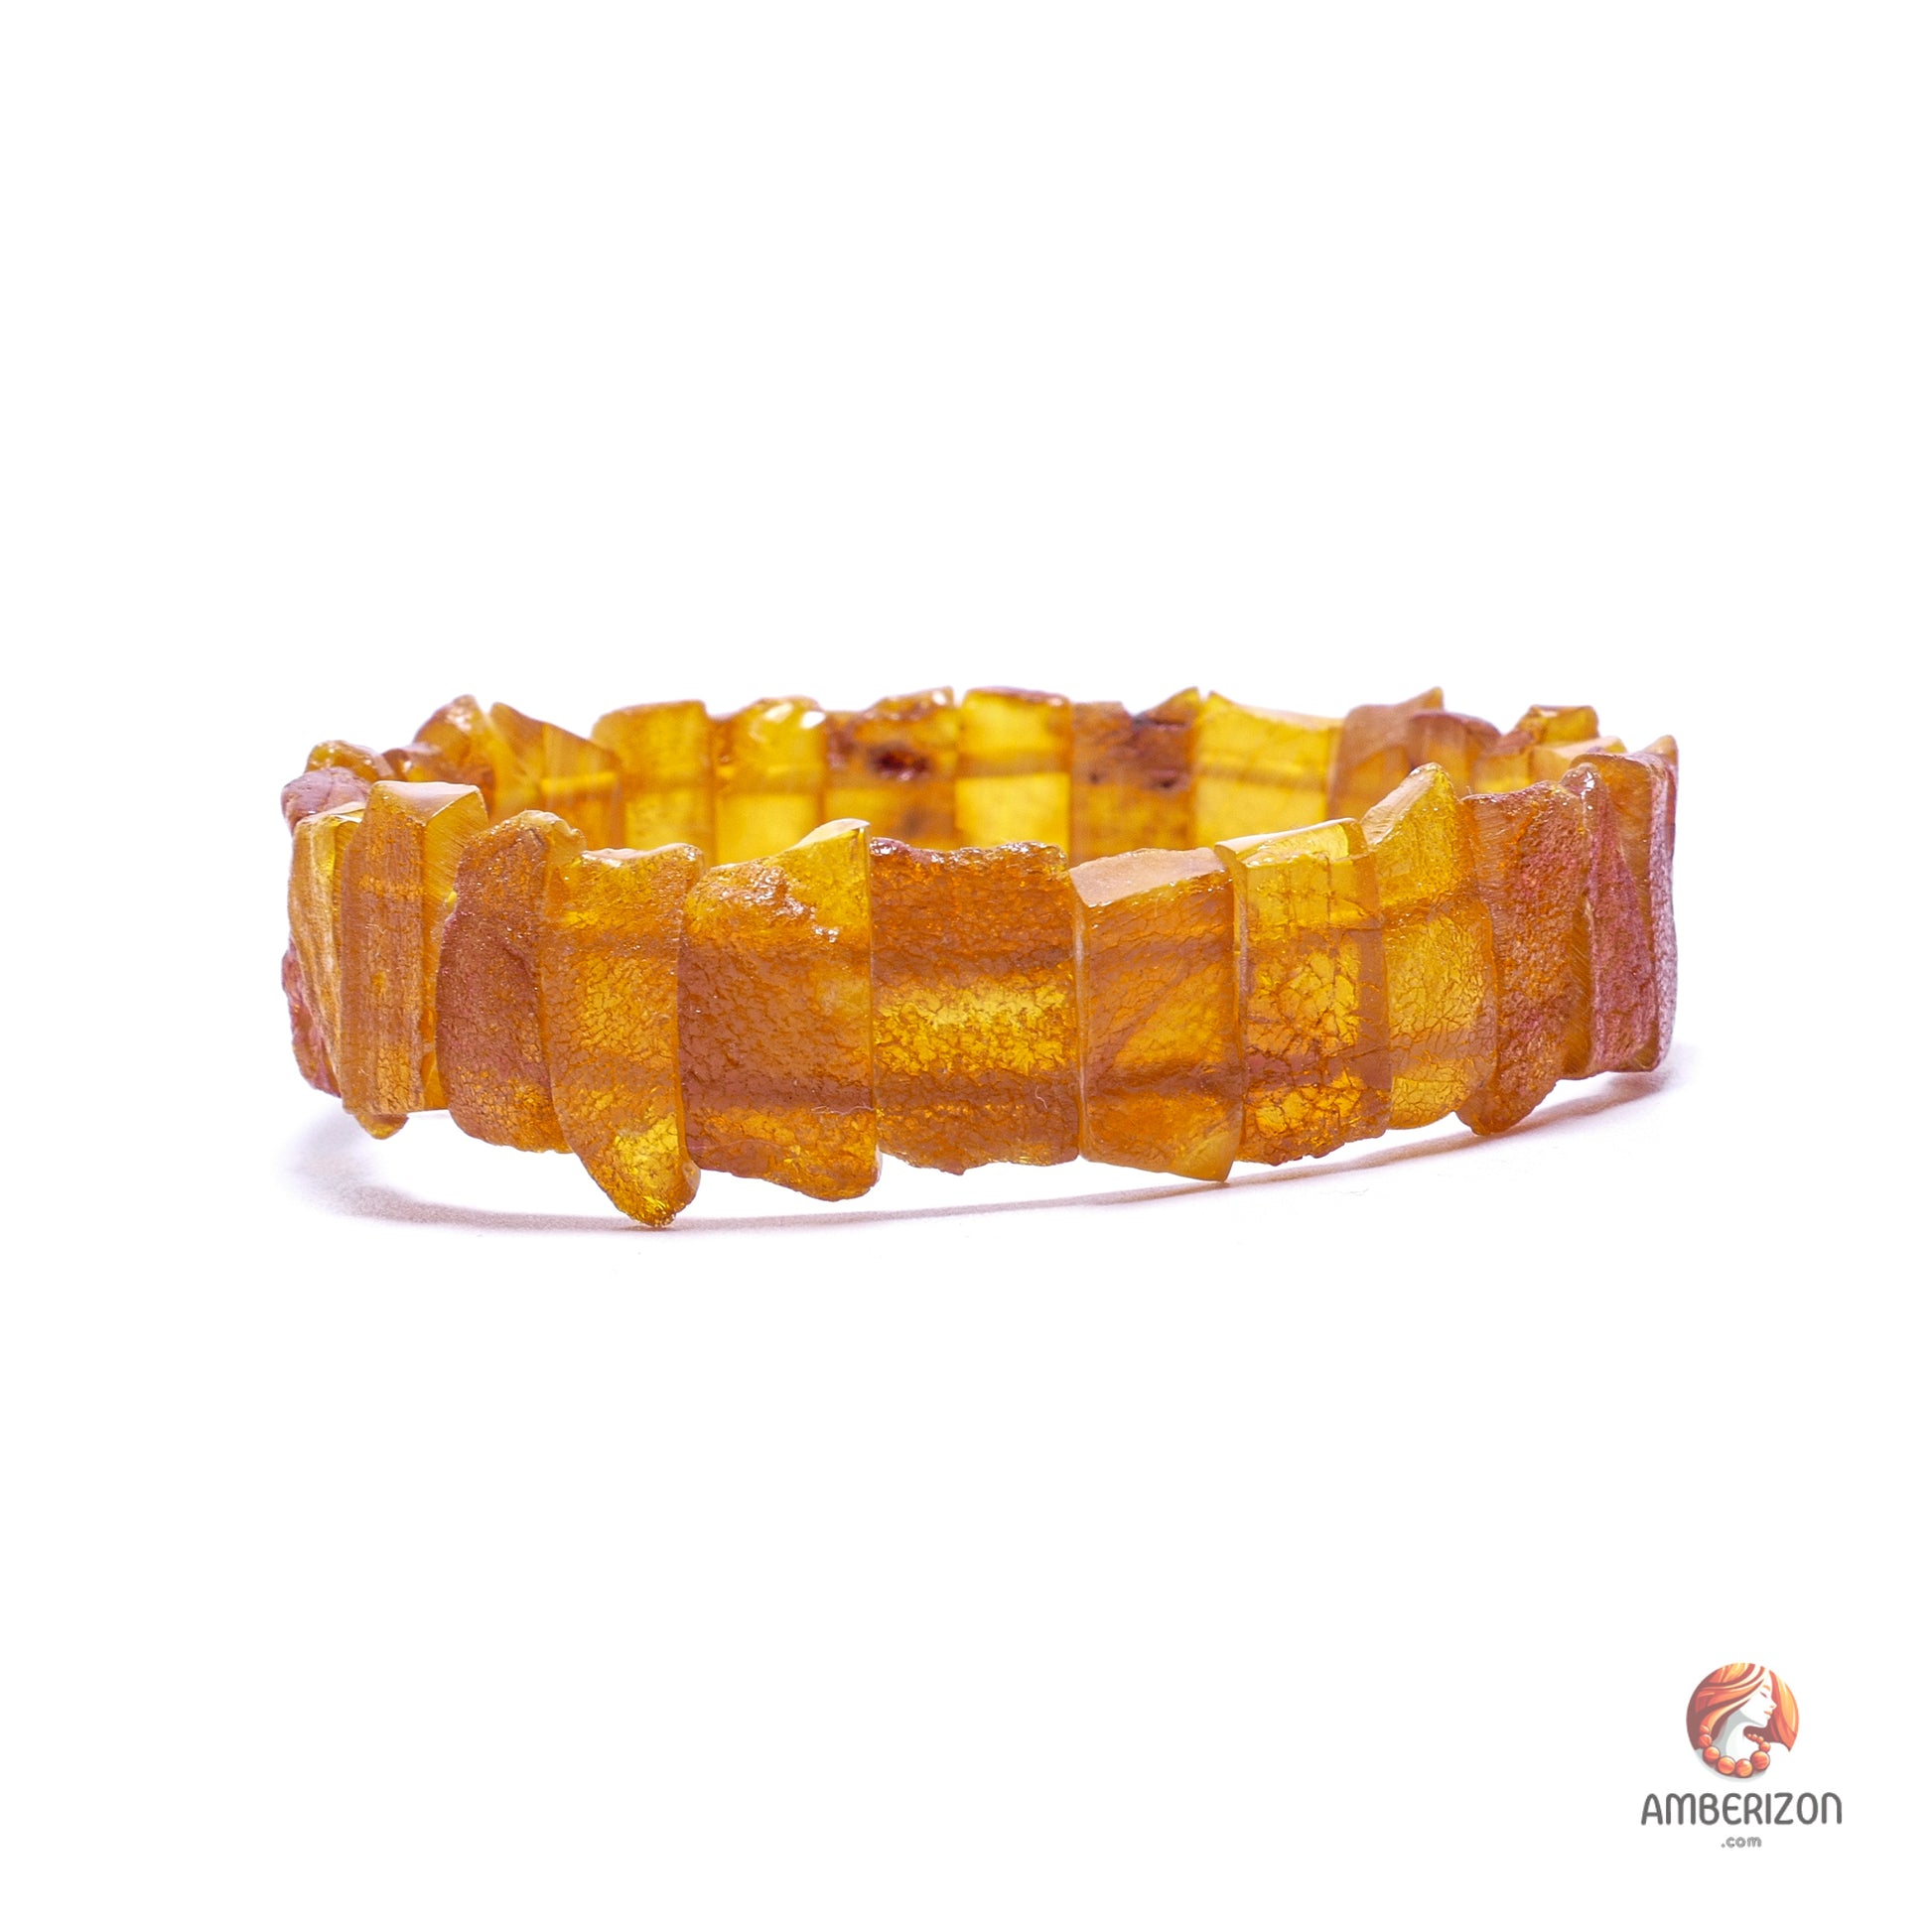 Unpolished raw sea amber stone bracelet - Grinded stone organic beads - Stretchy